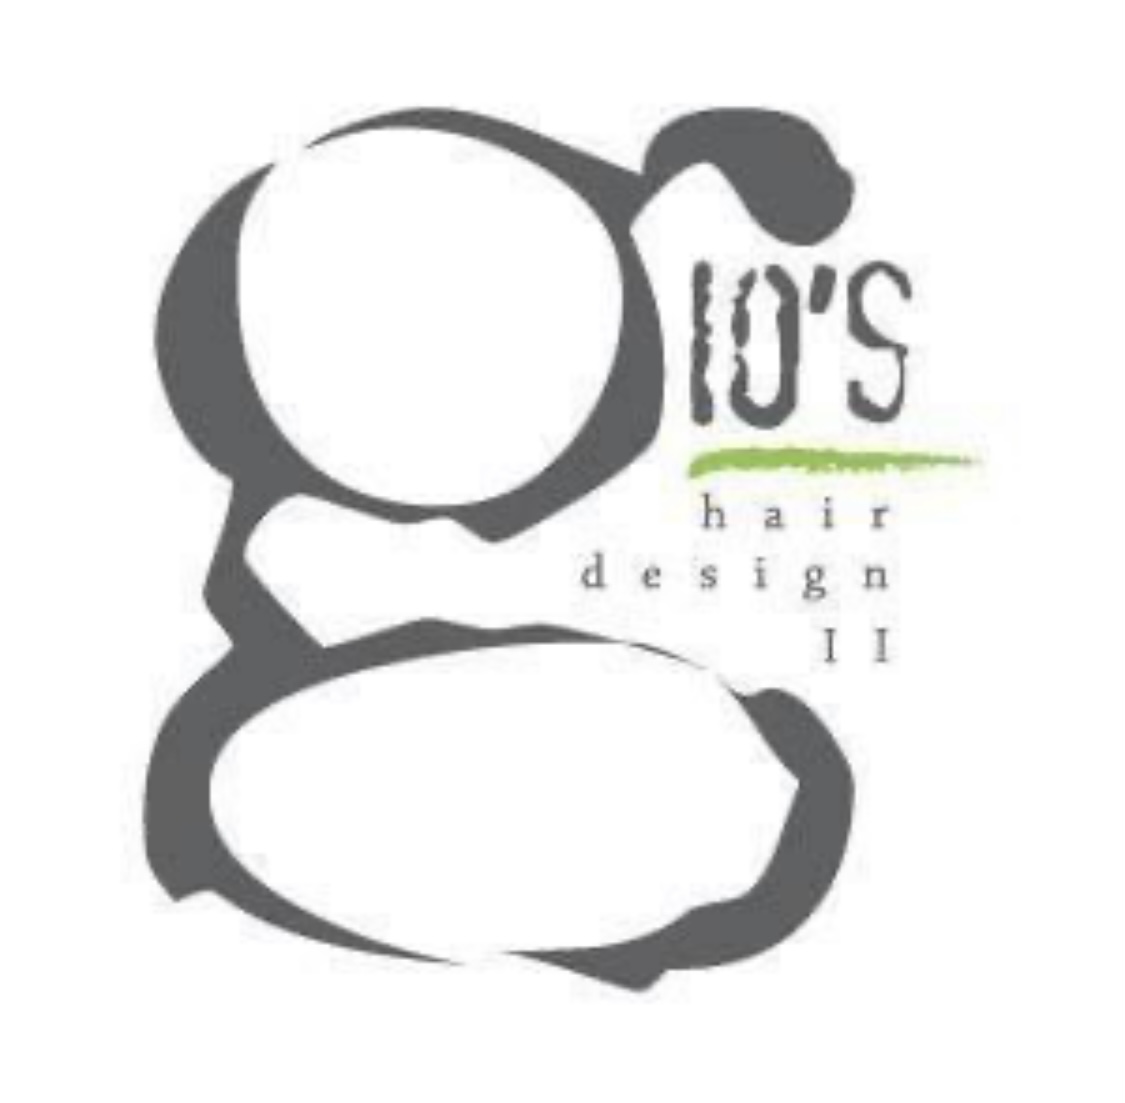 Gio's Hair Design 2 220B N Main St, Pleasant Gap Pennsylvania 16823